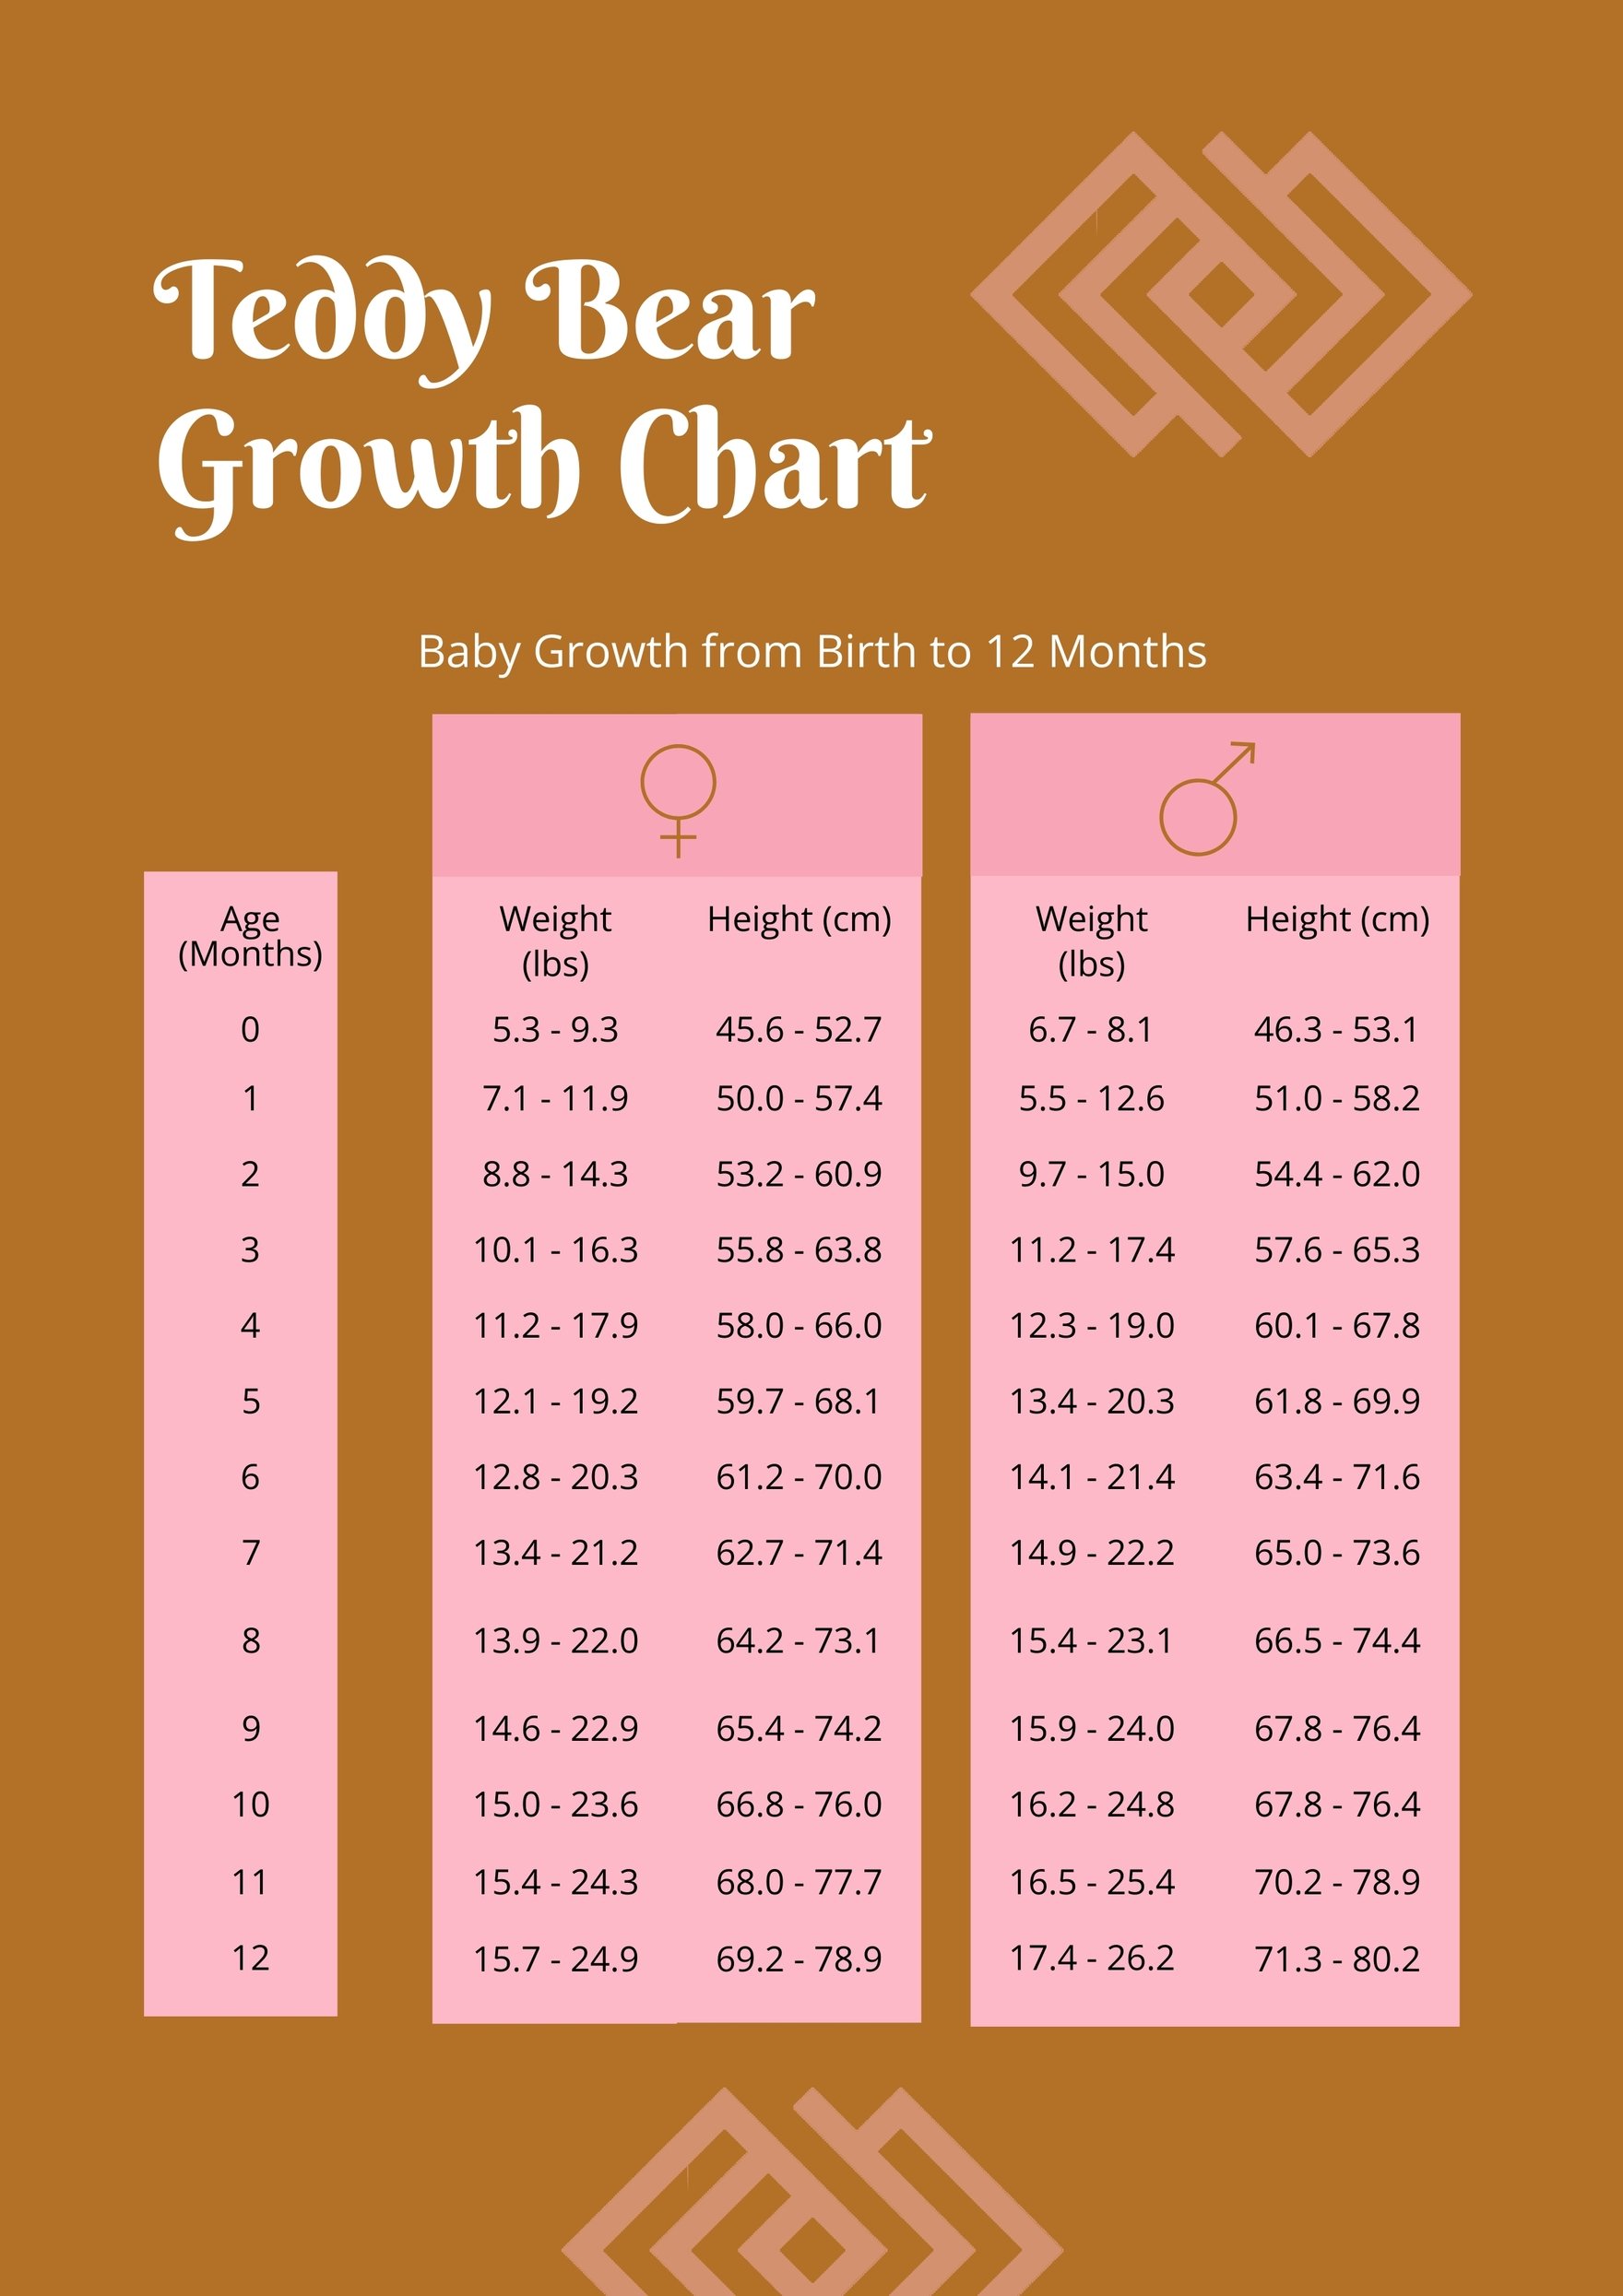 Teddy Bear Growth Chart in PDF, Illustrator